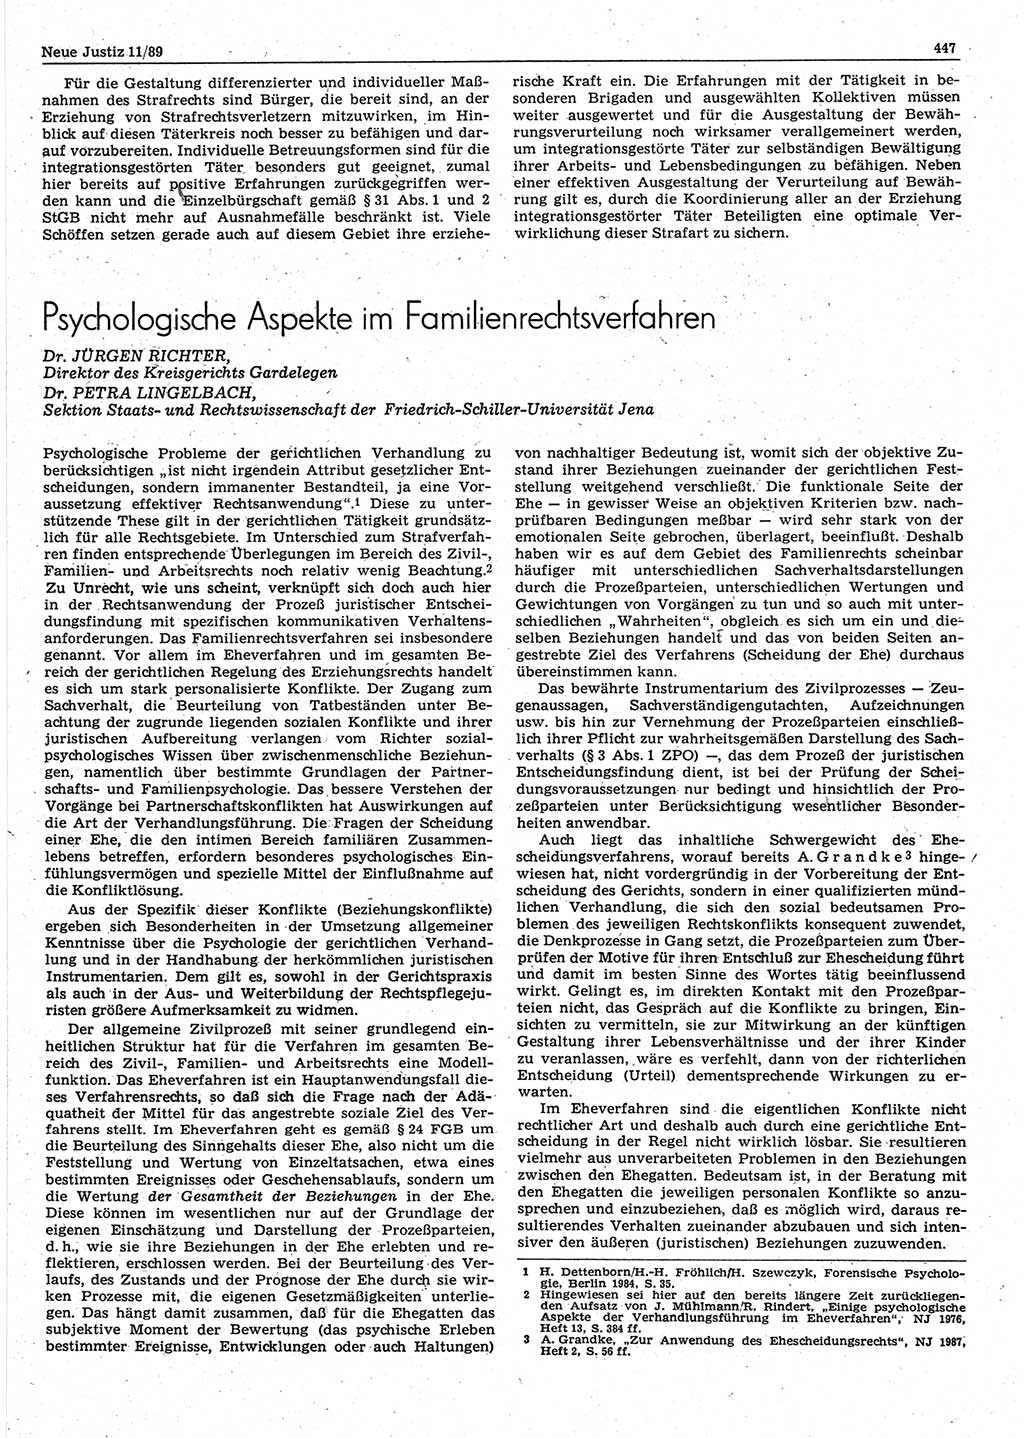 Neue Justiz (NJ), Zeitschrift für sozialistisches Recht und Gesetzlichkeit [Deutsche Demokratische Republik (DDR)], 43. Jahrgang 1989, Seite 447 (NJ DDR 1989, S. 447)